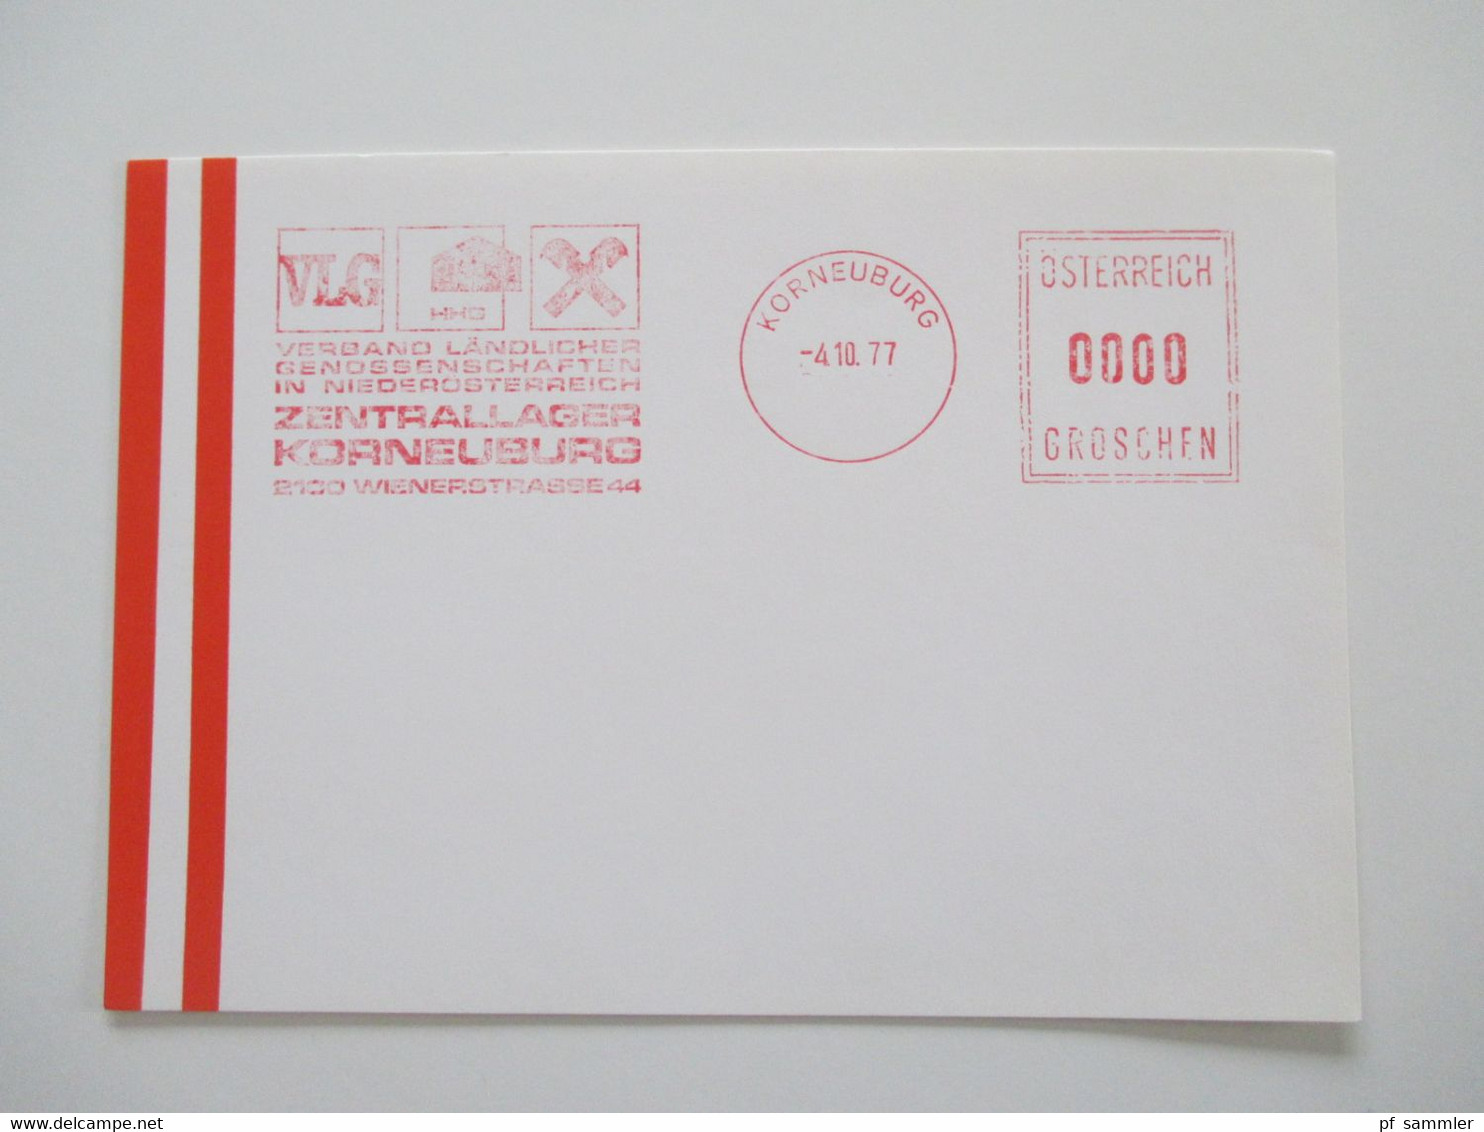 Österreich 1976 - 78 Freistempel Mit Wert 0000 Groschen Insgesamt 29 Stempelbelege / Blanko Karten Alles Verschiedene St - Covers & Documents